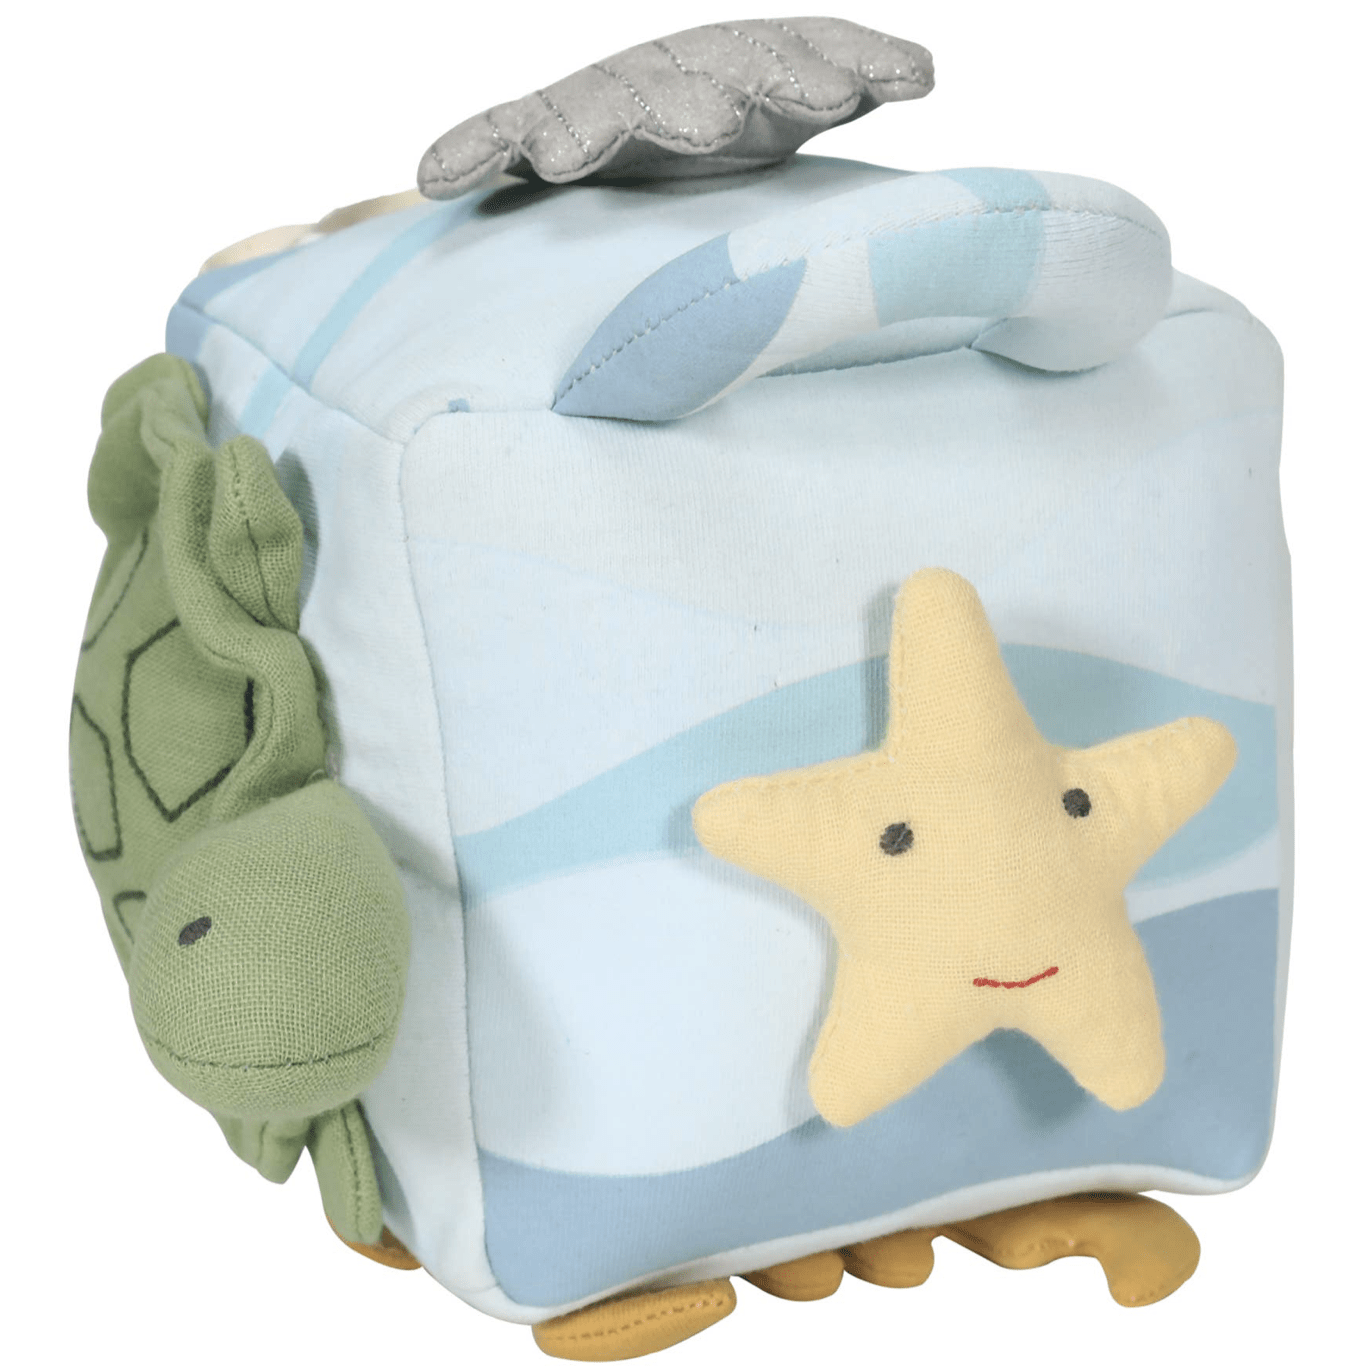 Tikiri Toys LLC Default Ocean Activity Cube Developmental Toy